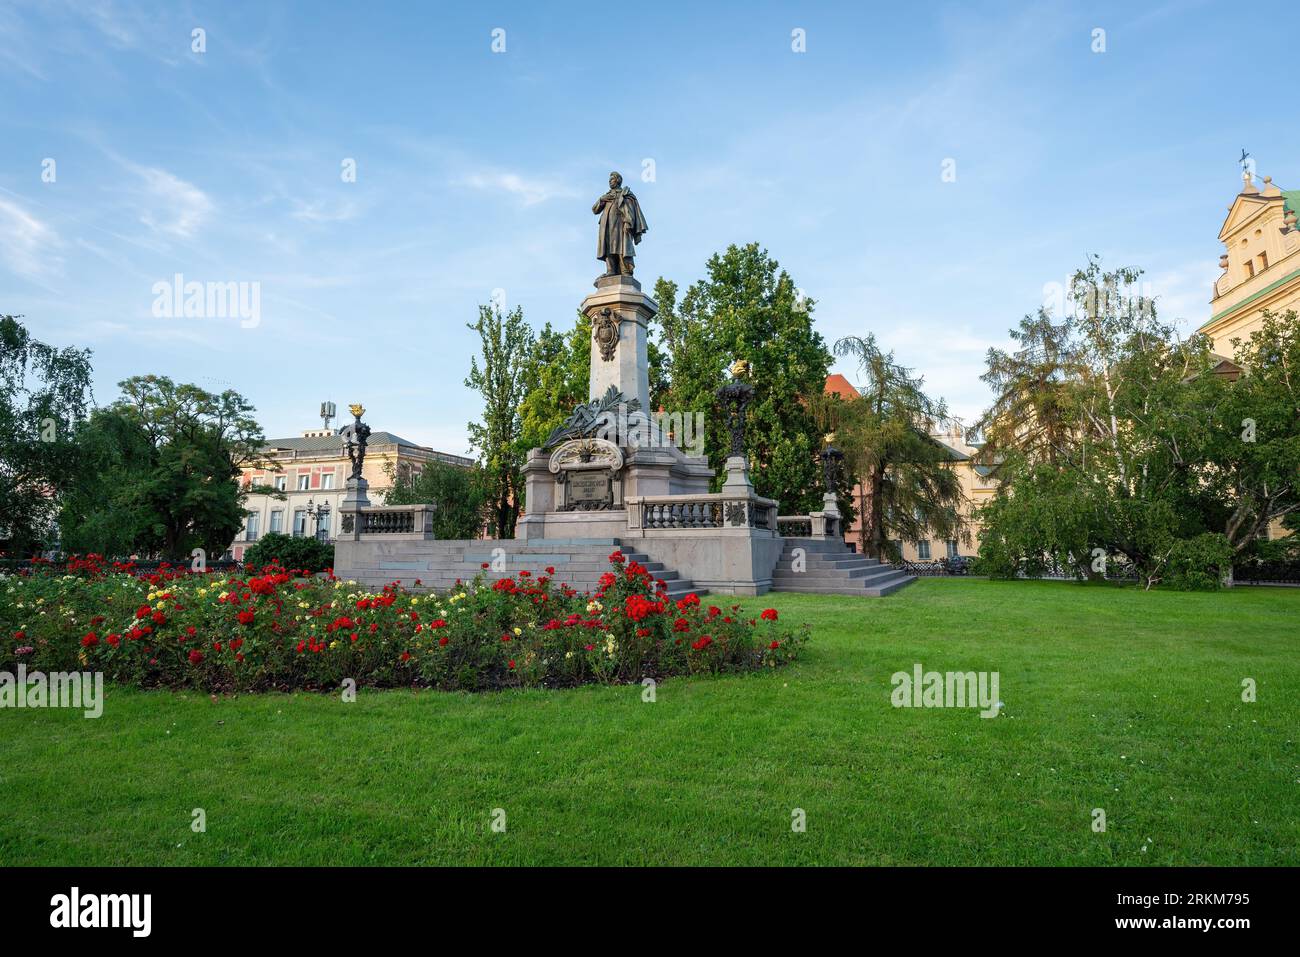 Adam Mickiewicz Monument - Warsaw, Poland Stock Photo